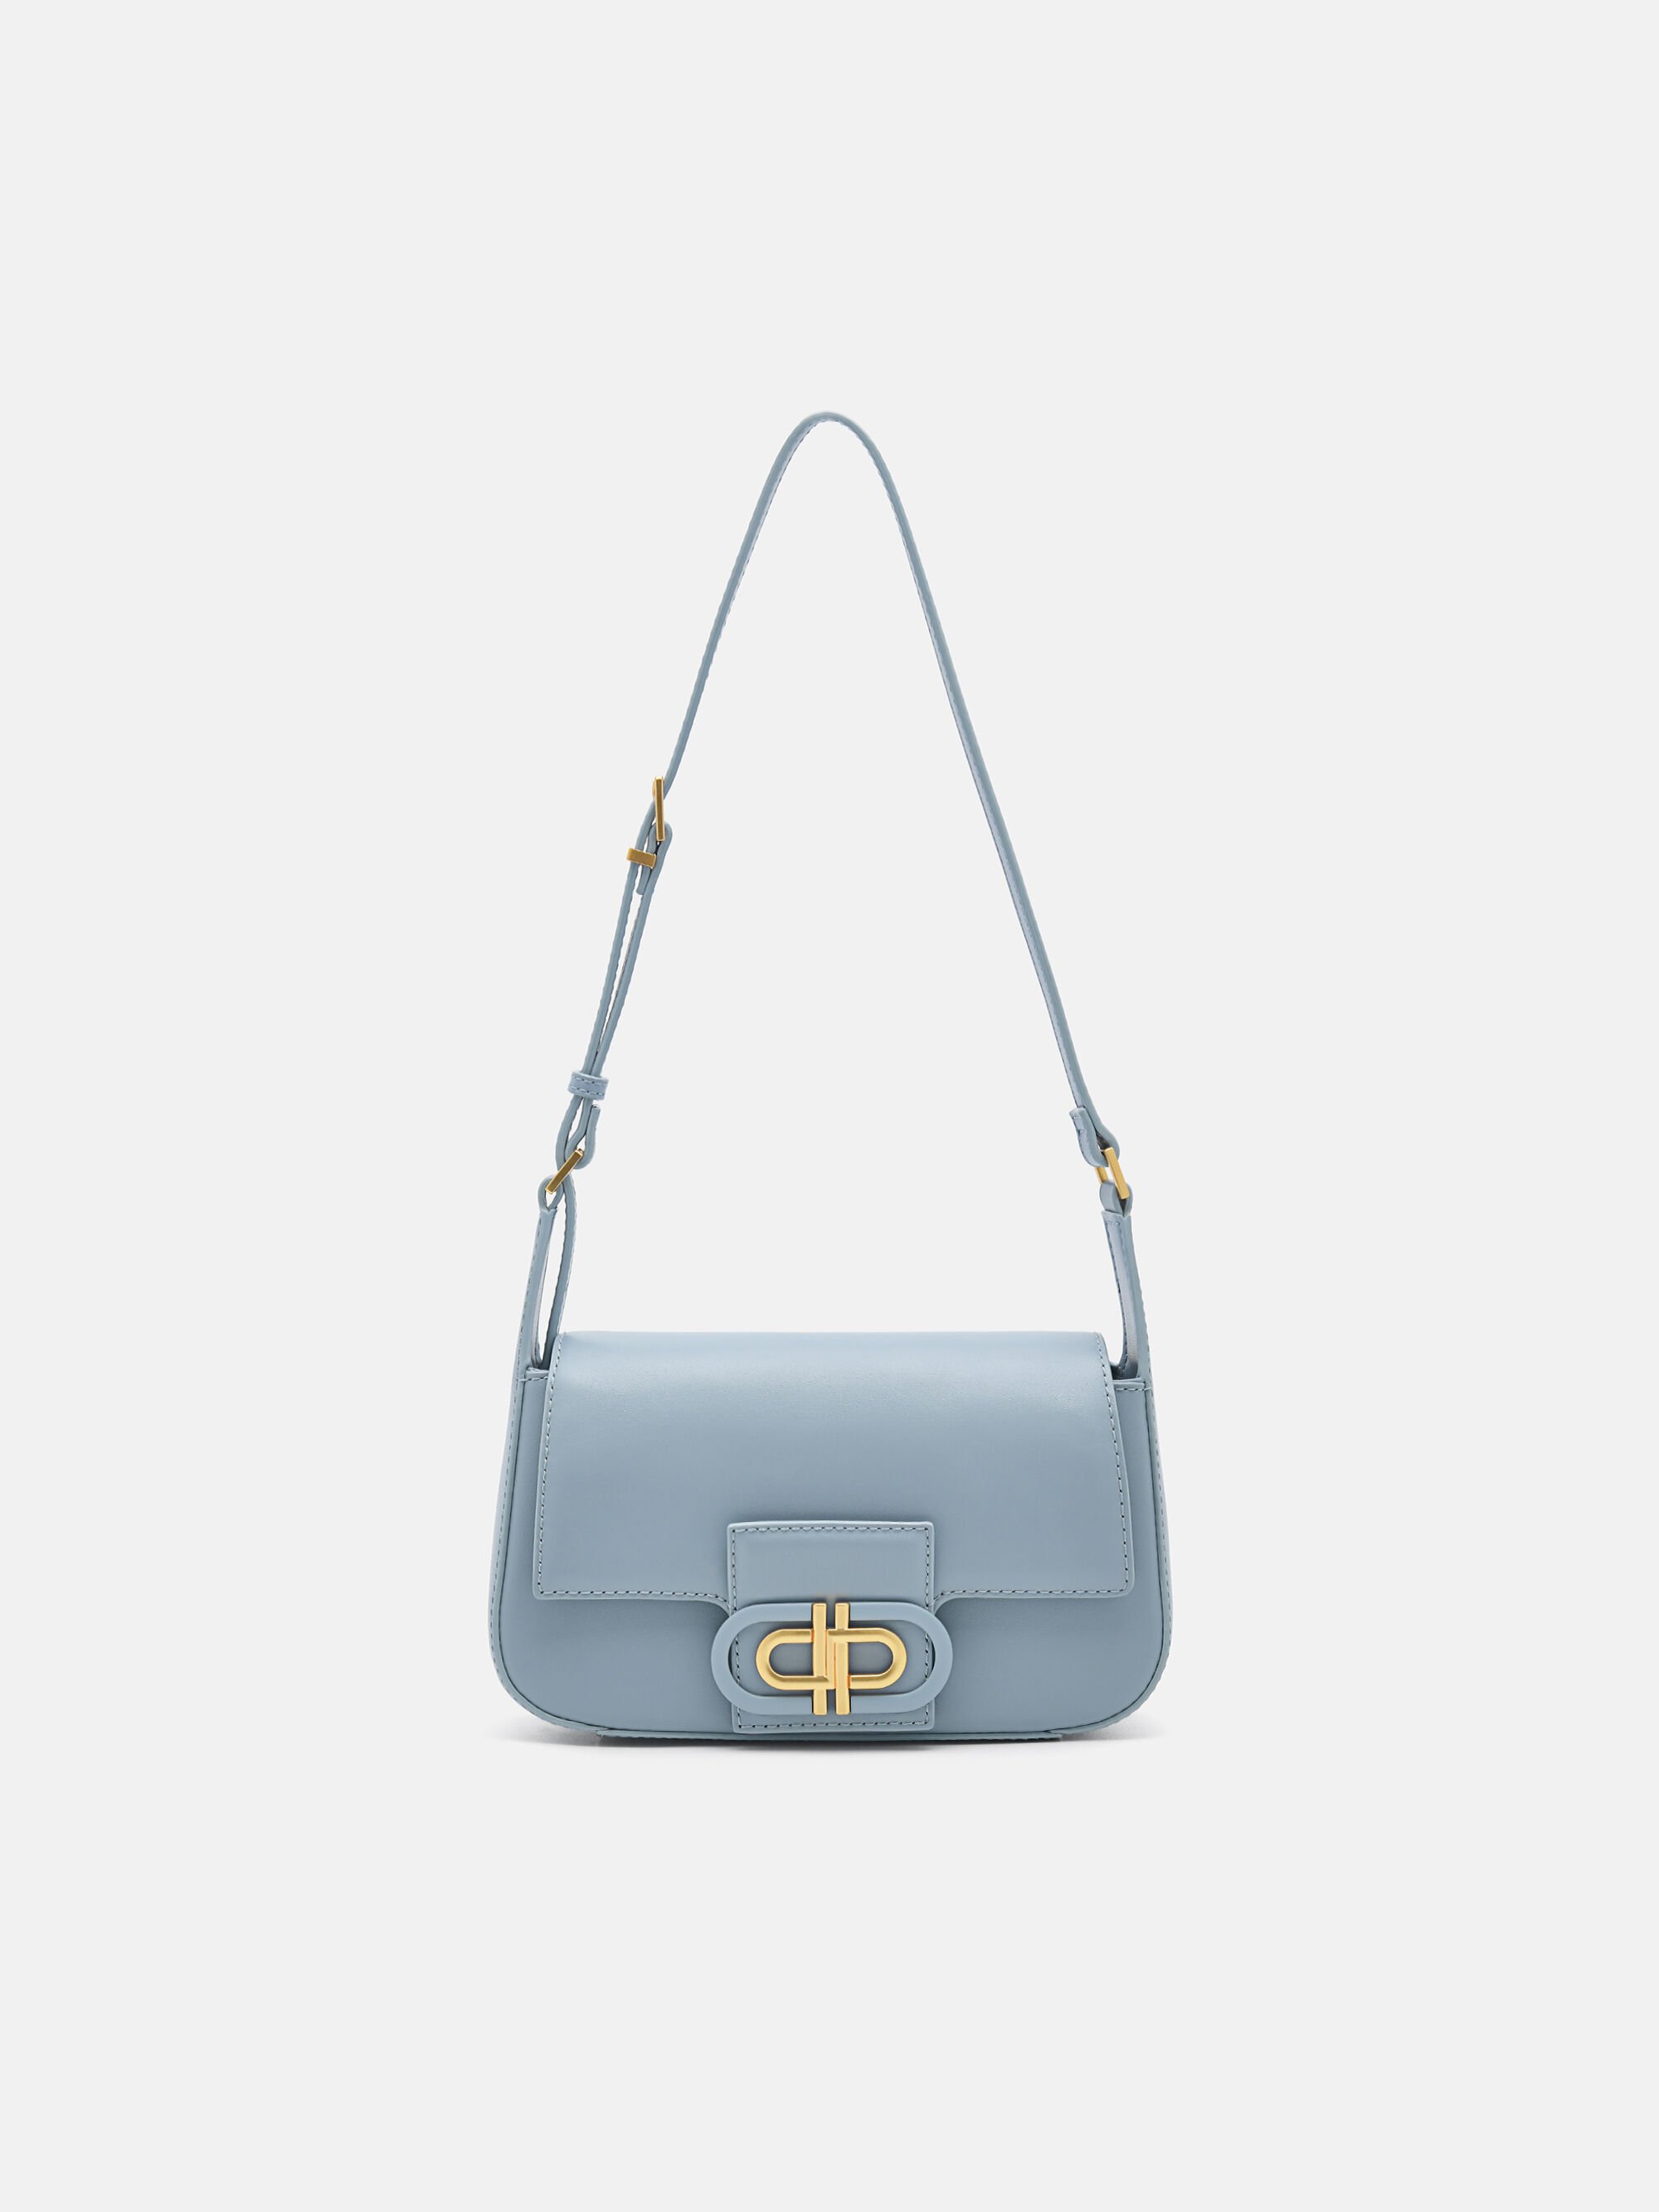 PEDRO - Shoulder bag for that sunny glam. Shop @toudelust bag in